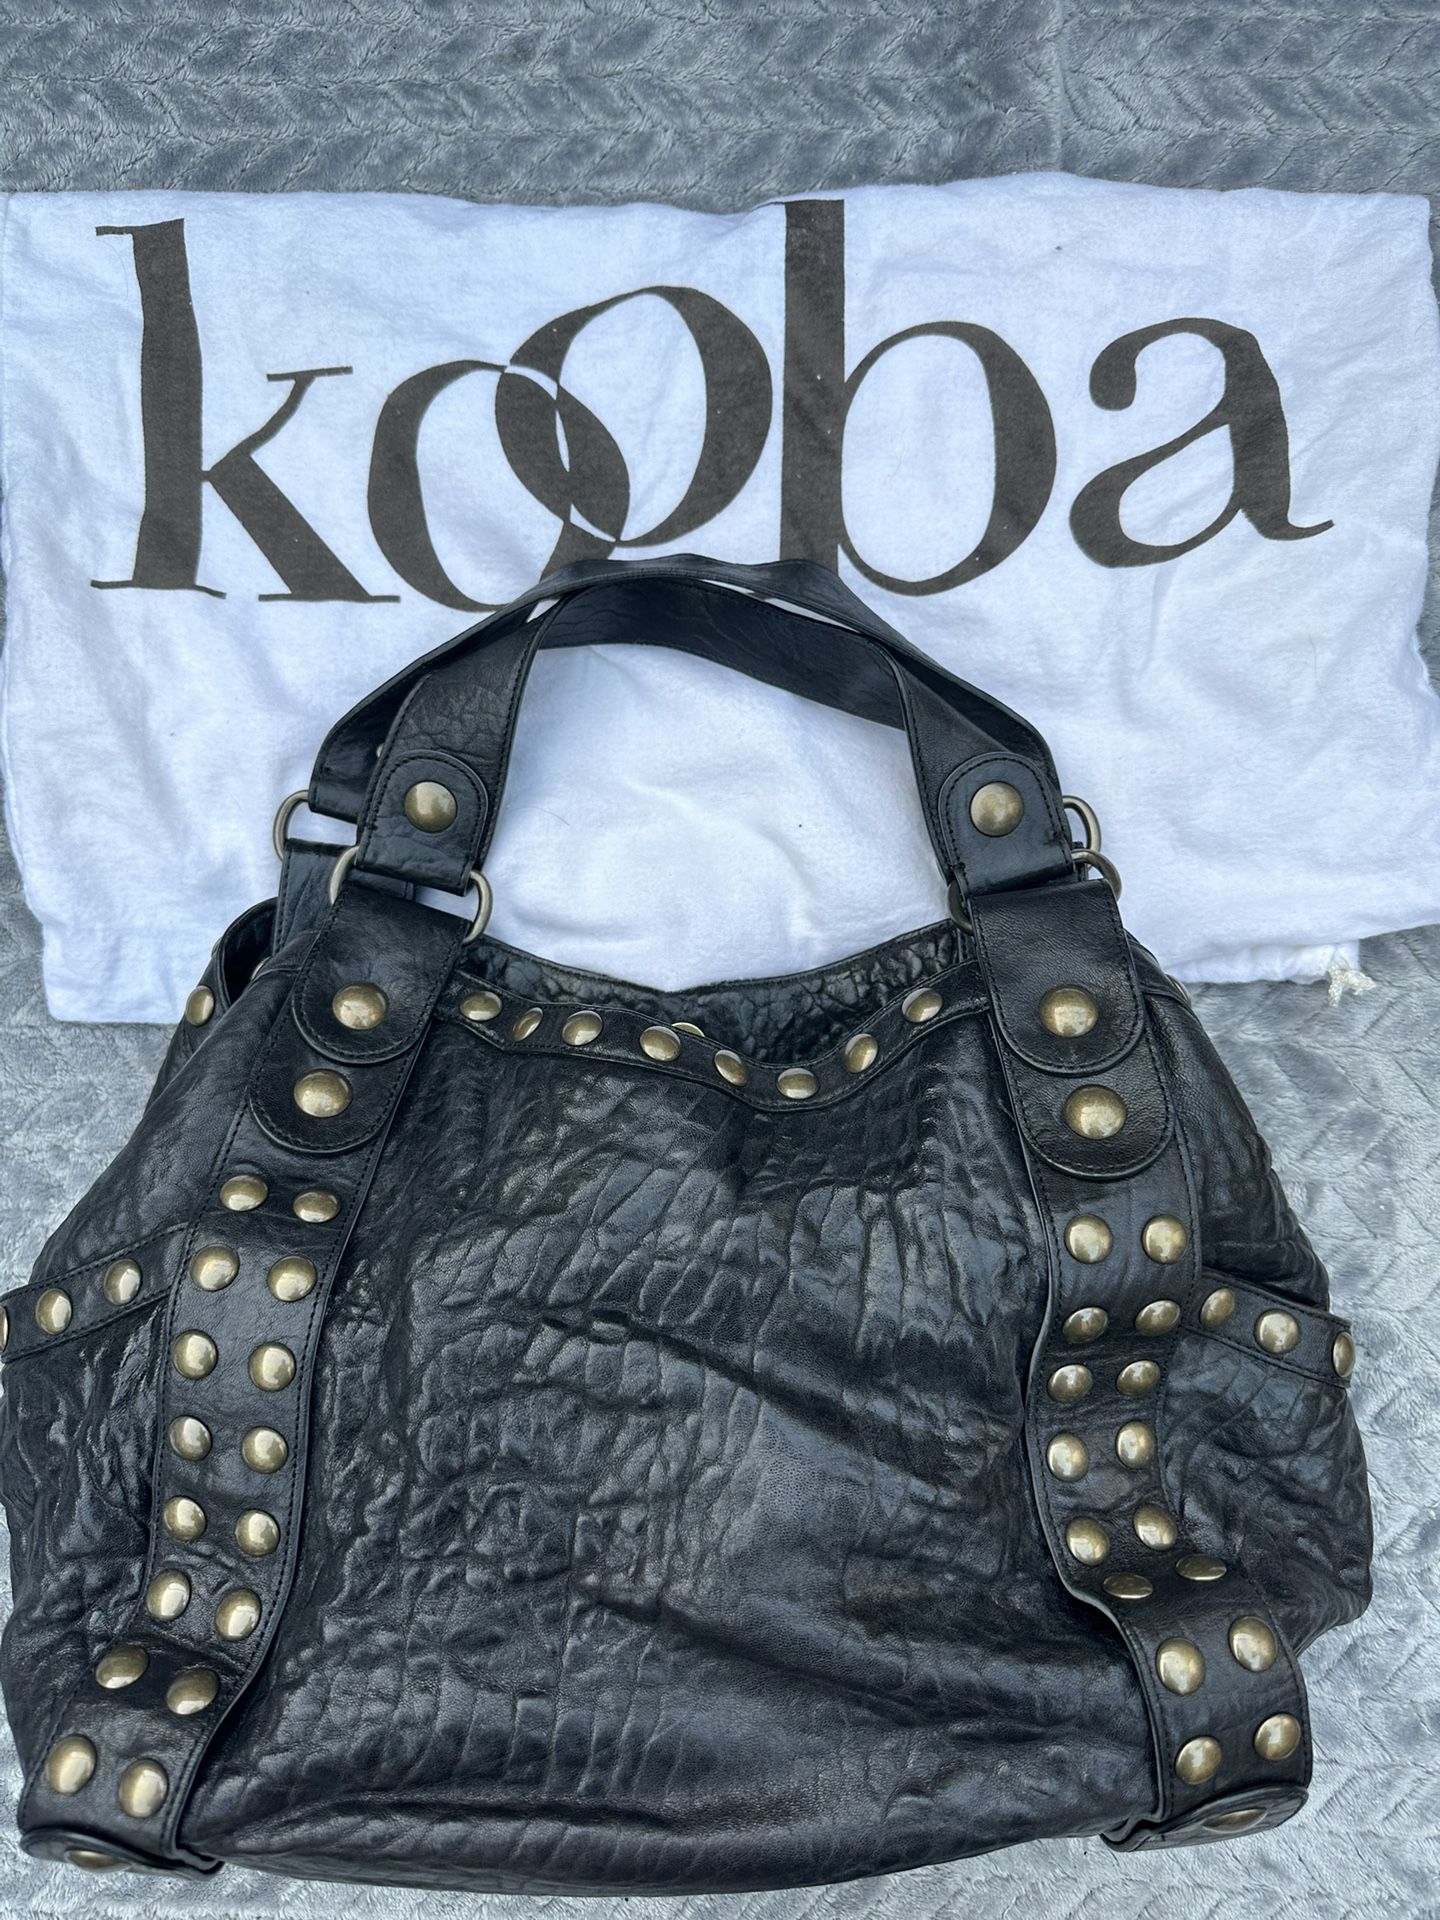 Kooba Black Leather Bag 